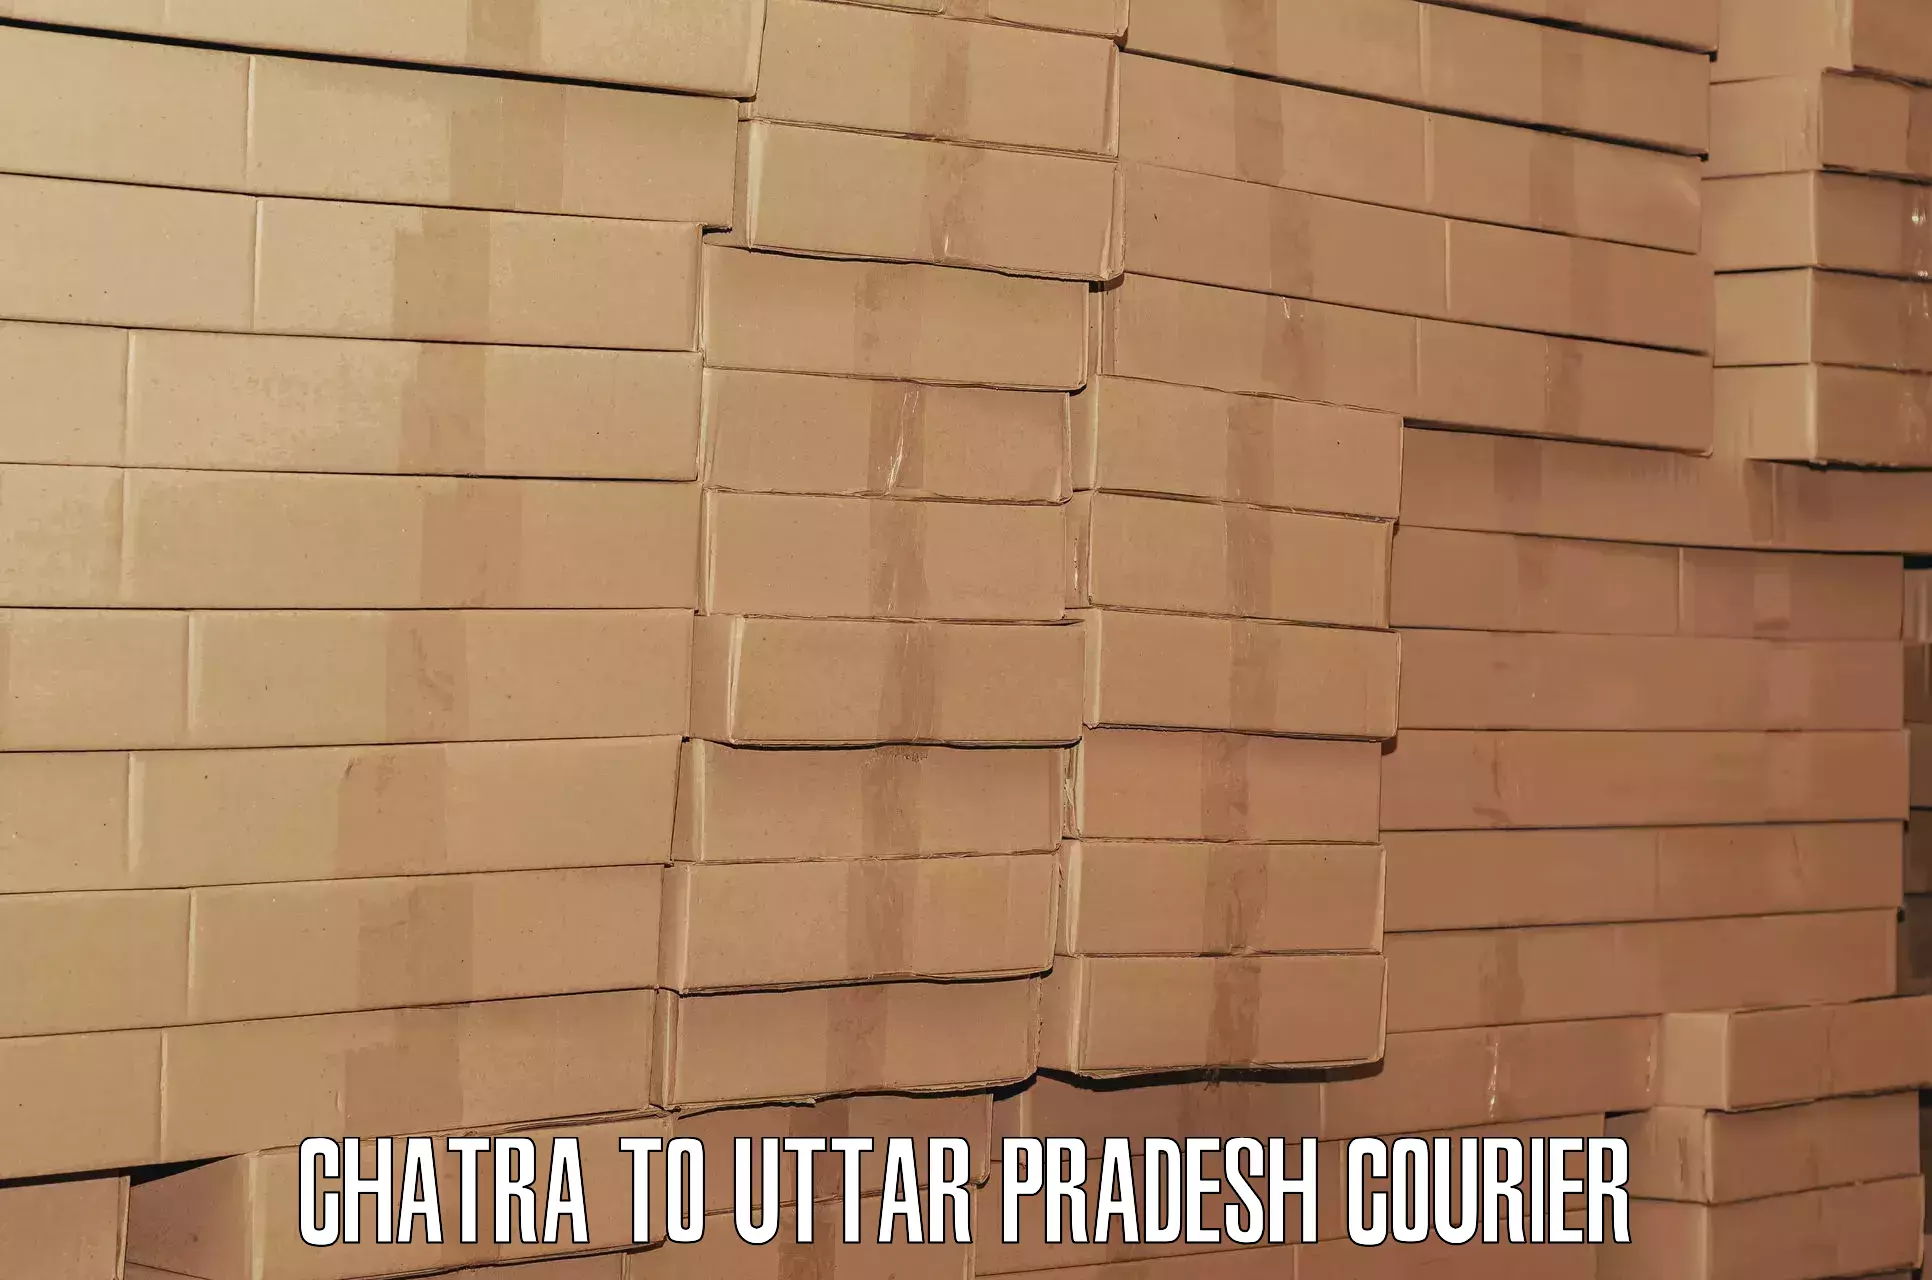 High-quality baggage shipment Chatra to Uttar Pradesh